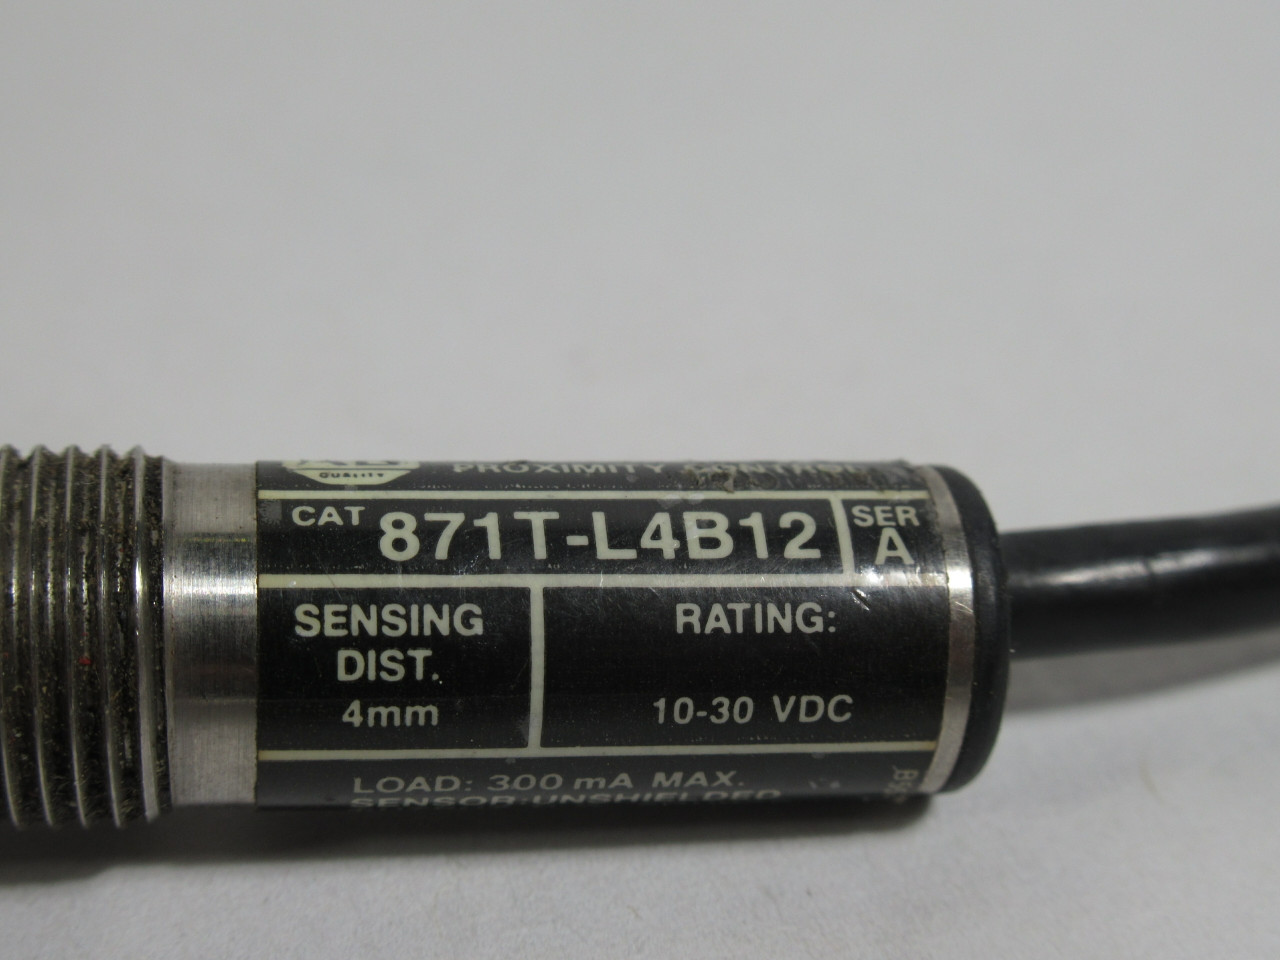 Allen-Bradley 871T-L4B12 Ser A Proximity Sensor 10-30VDC 3" Cut Cable USED